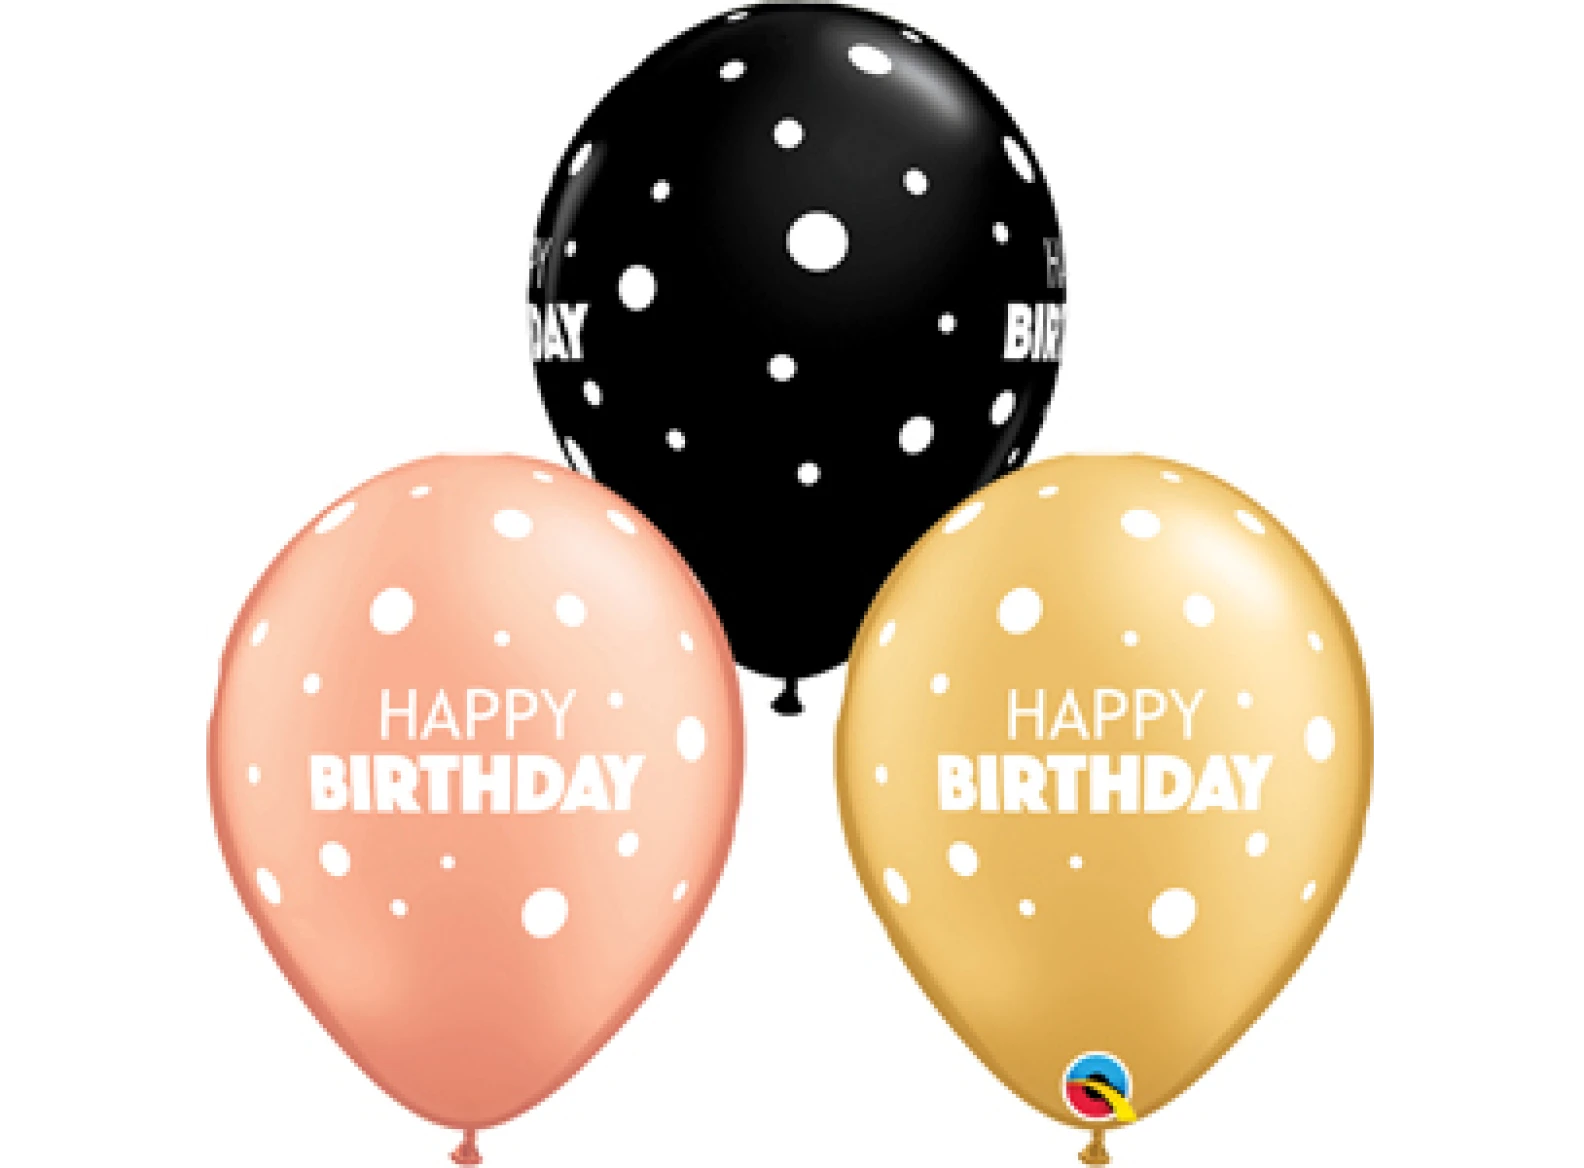 3 Happy Birthday Balloons - image №1